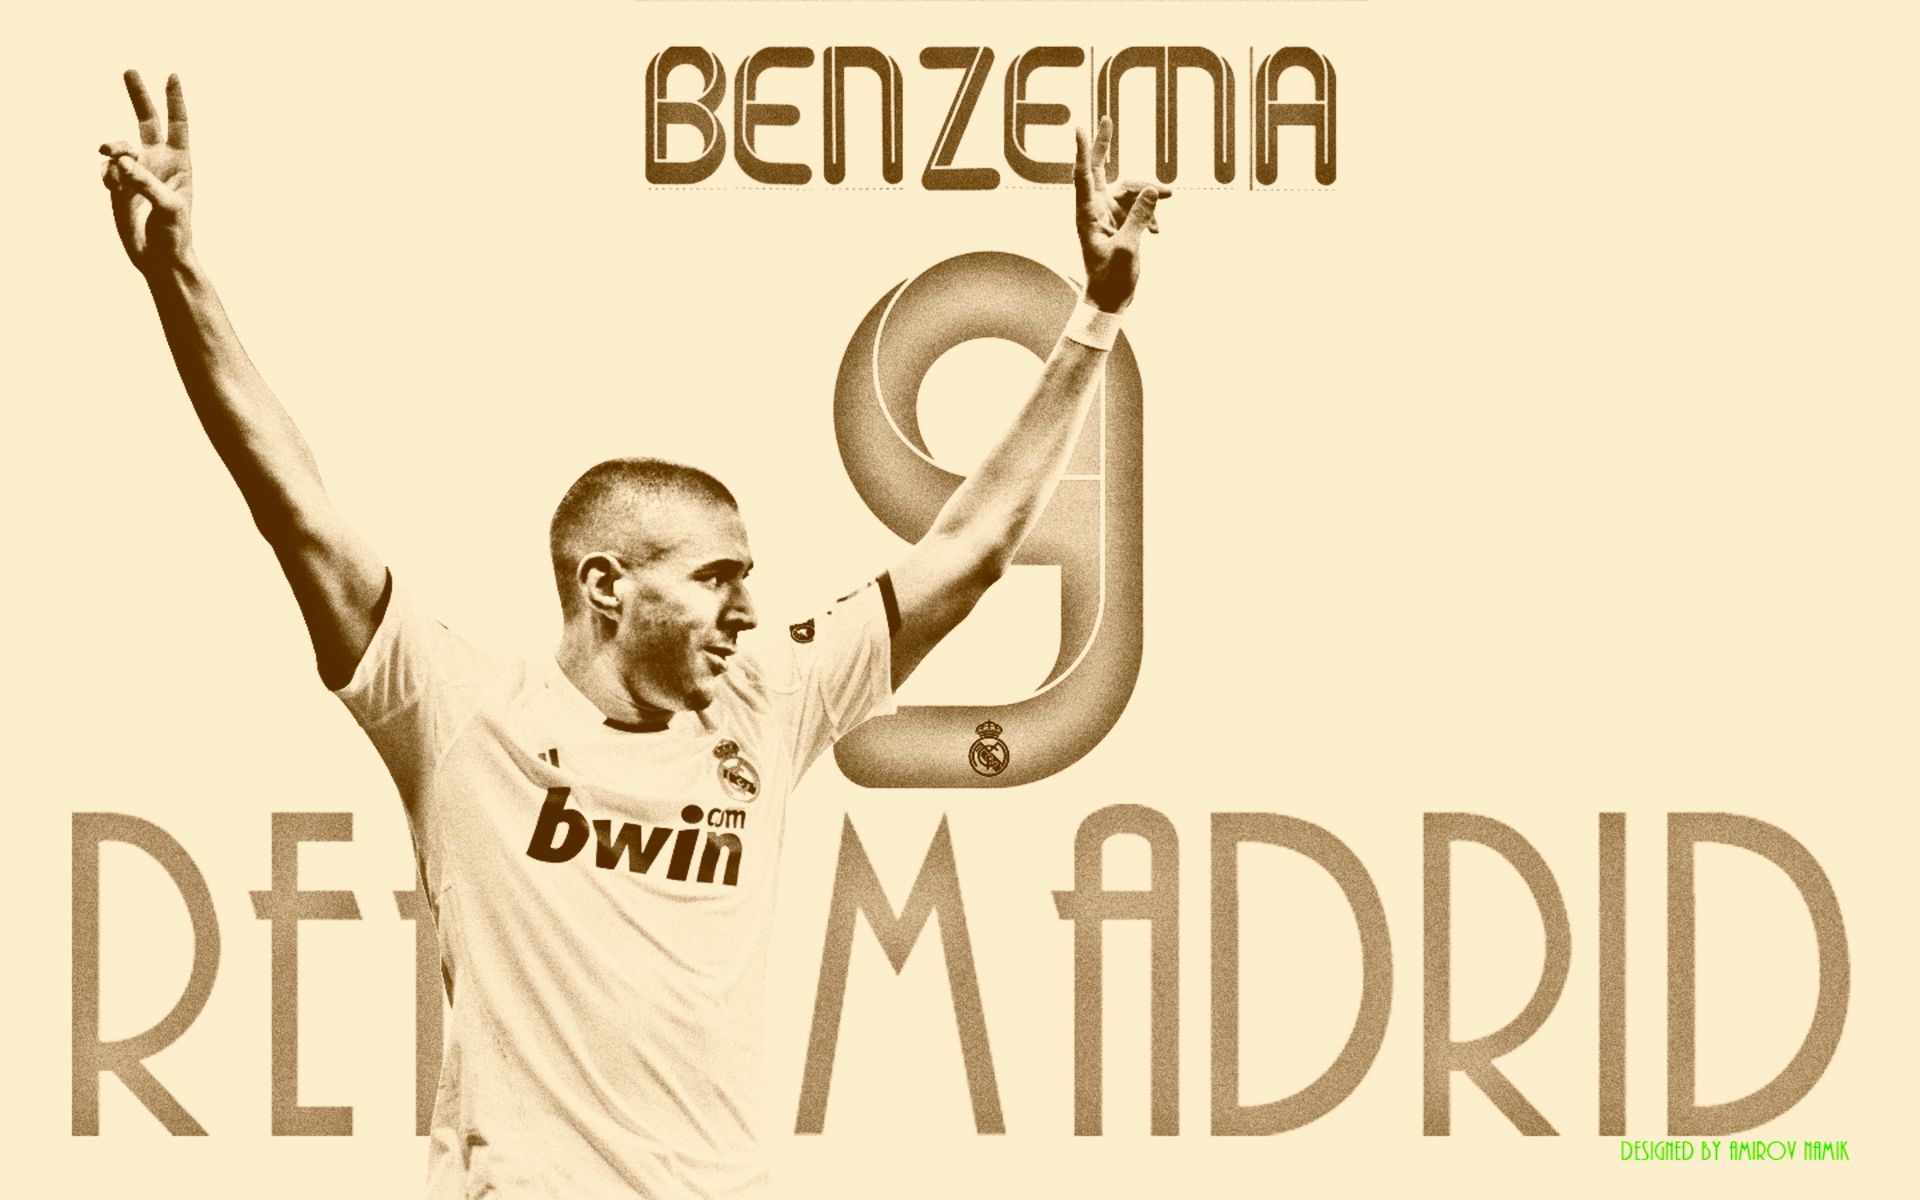 Baixe gratuitamente a imagem Esportes, Futebol, Real Madrid C F, Karim Benzema na área de trabalho do seu PC